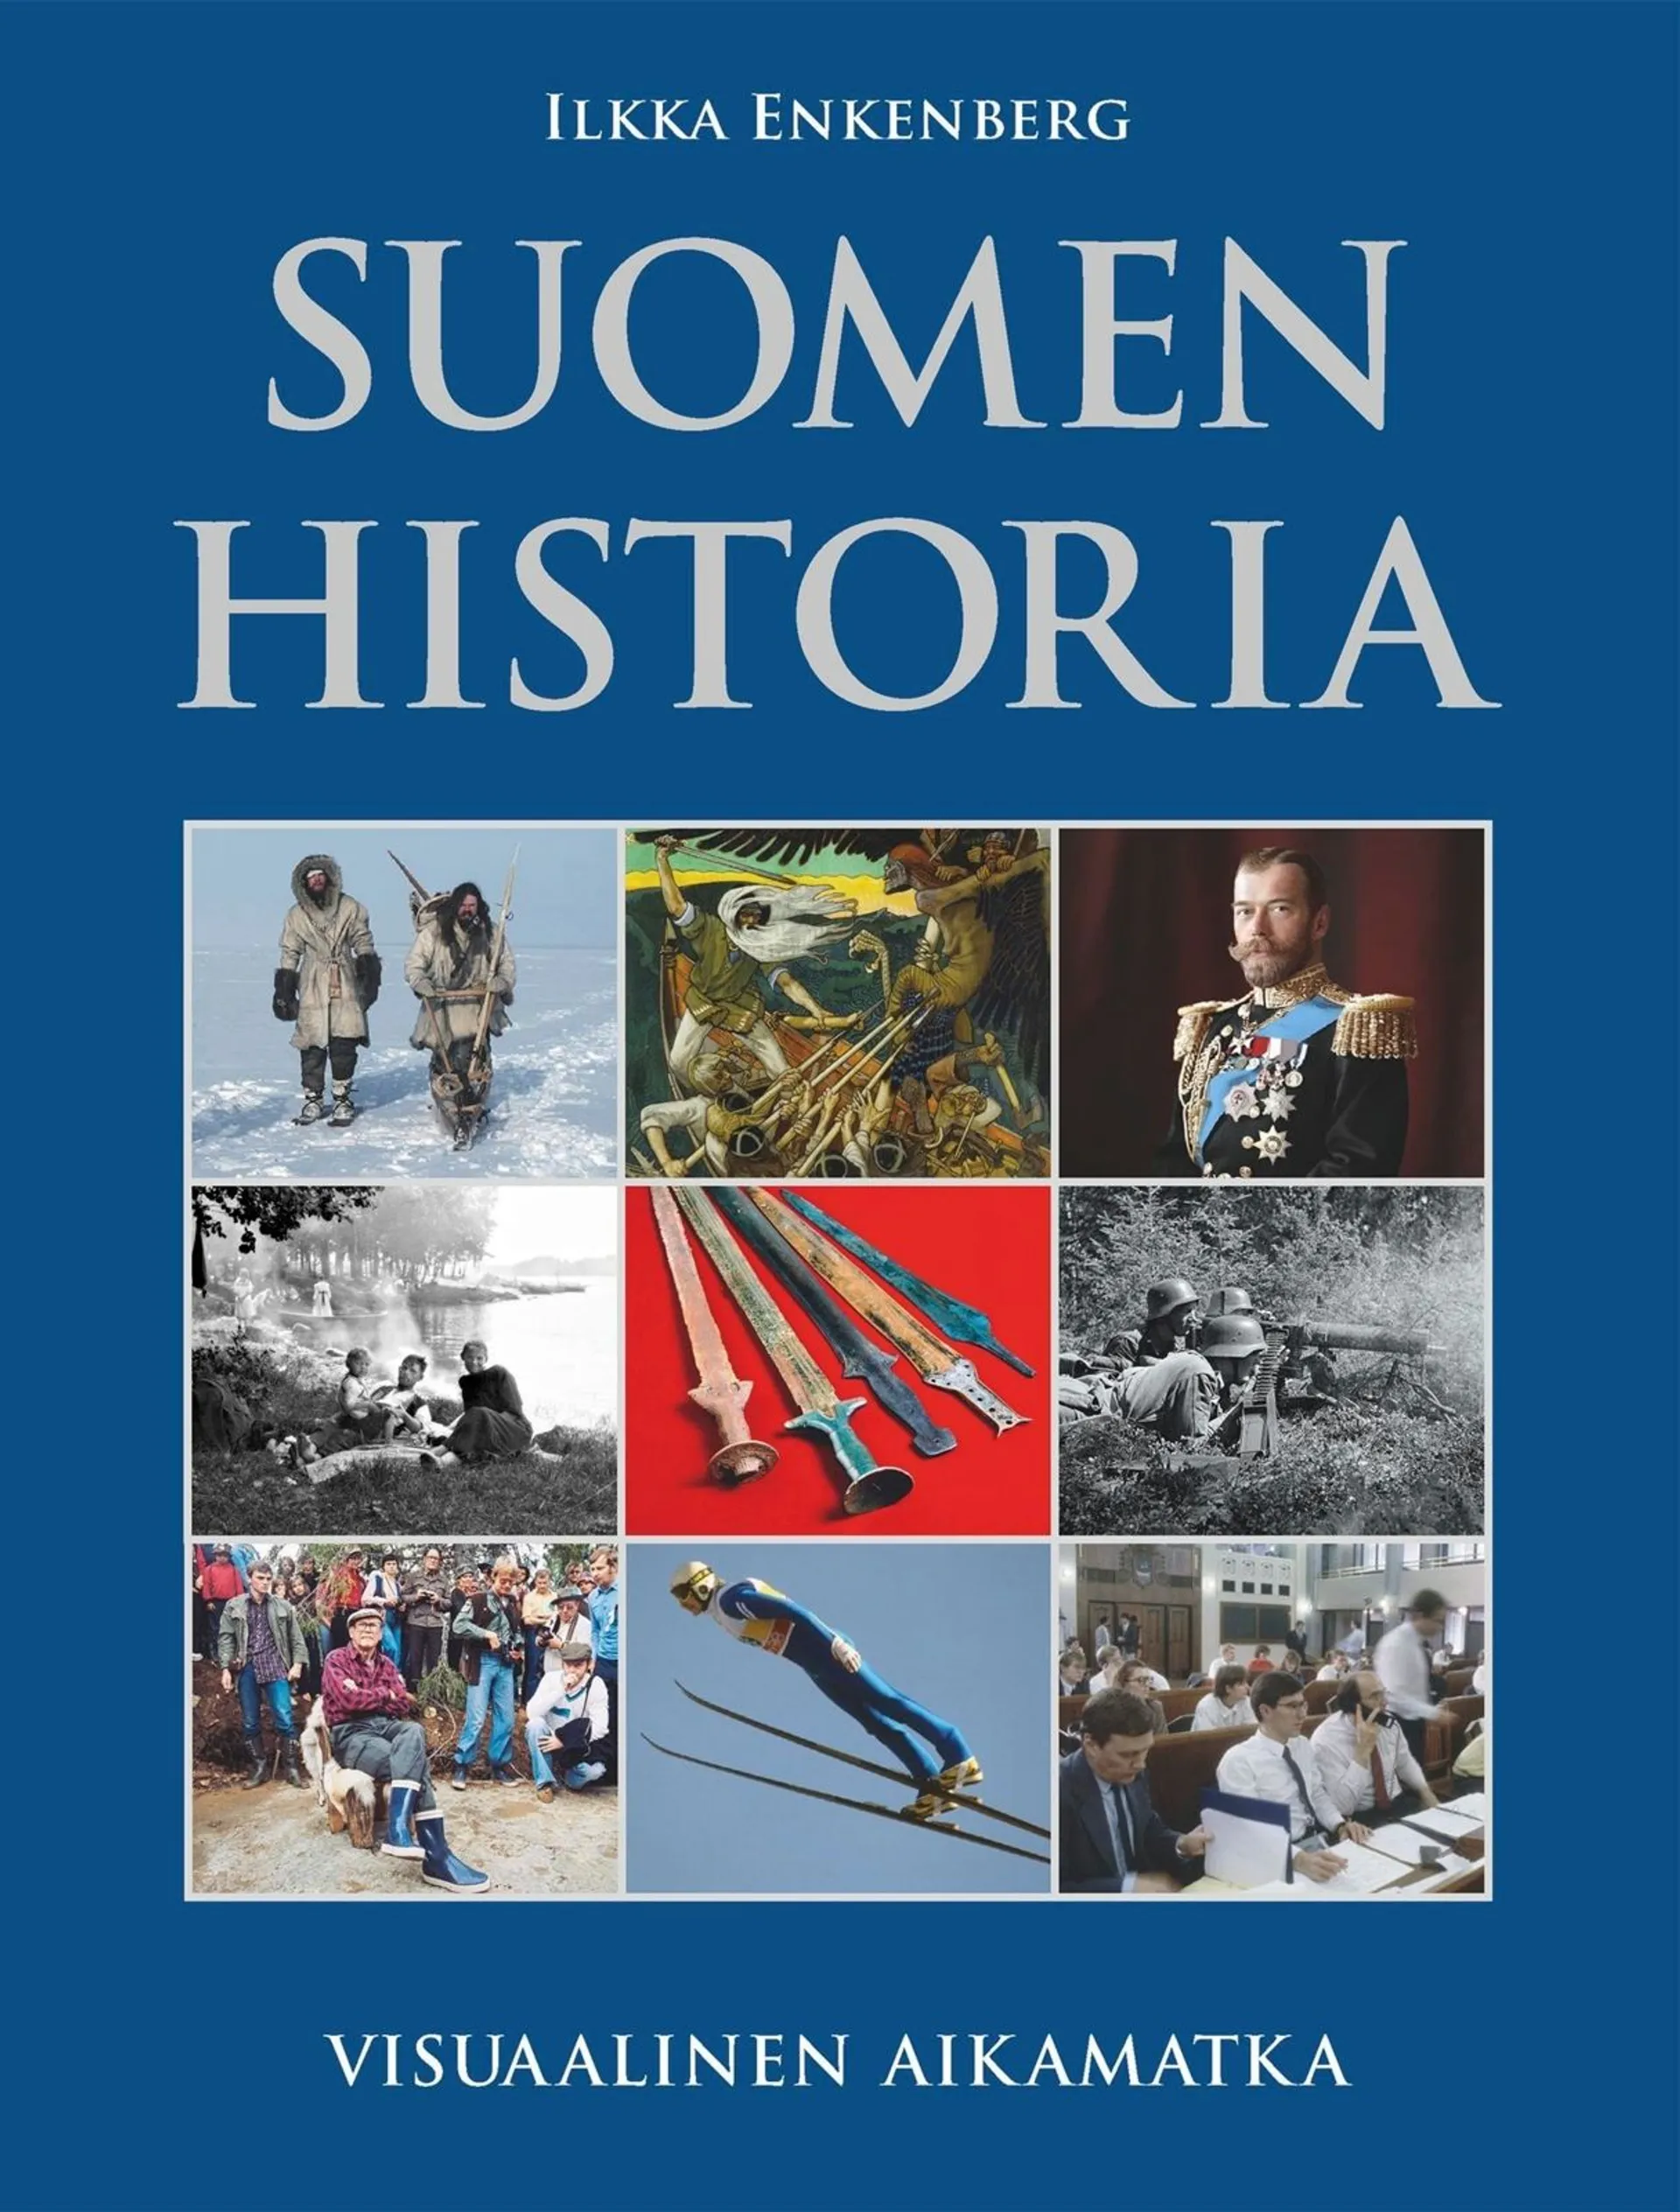 Enkenberg, Suomen historia - Visuaalinen aikamatka